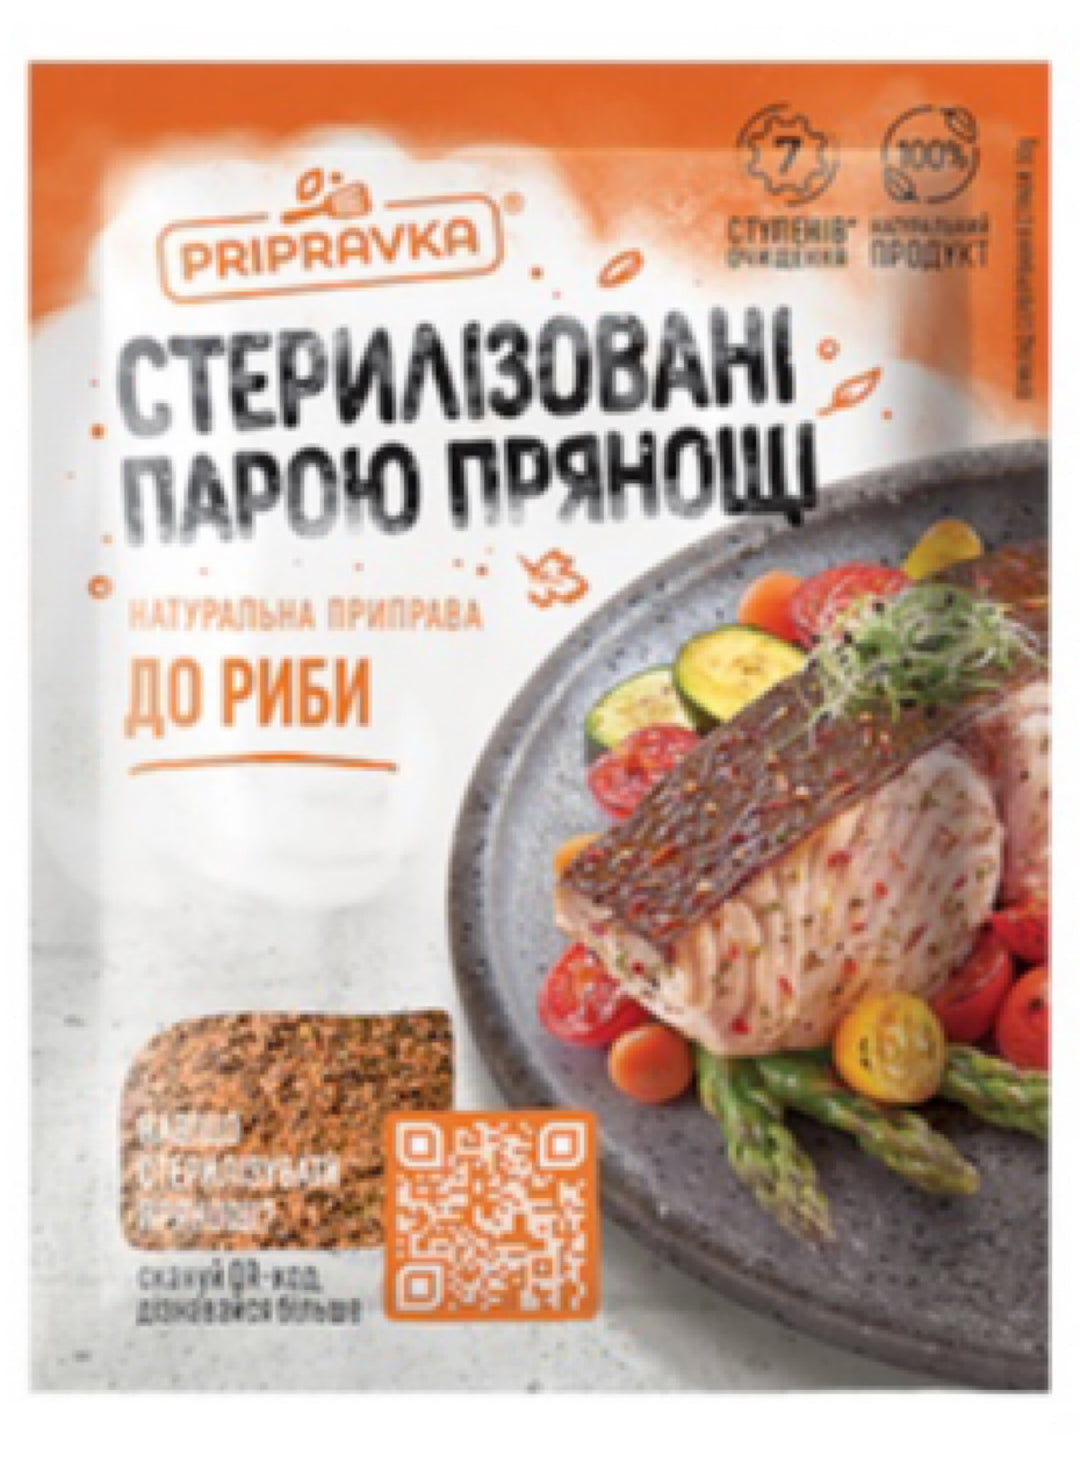 Seasoning for fish - Pripravka - 30g